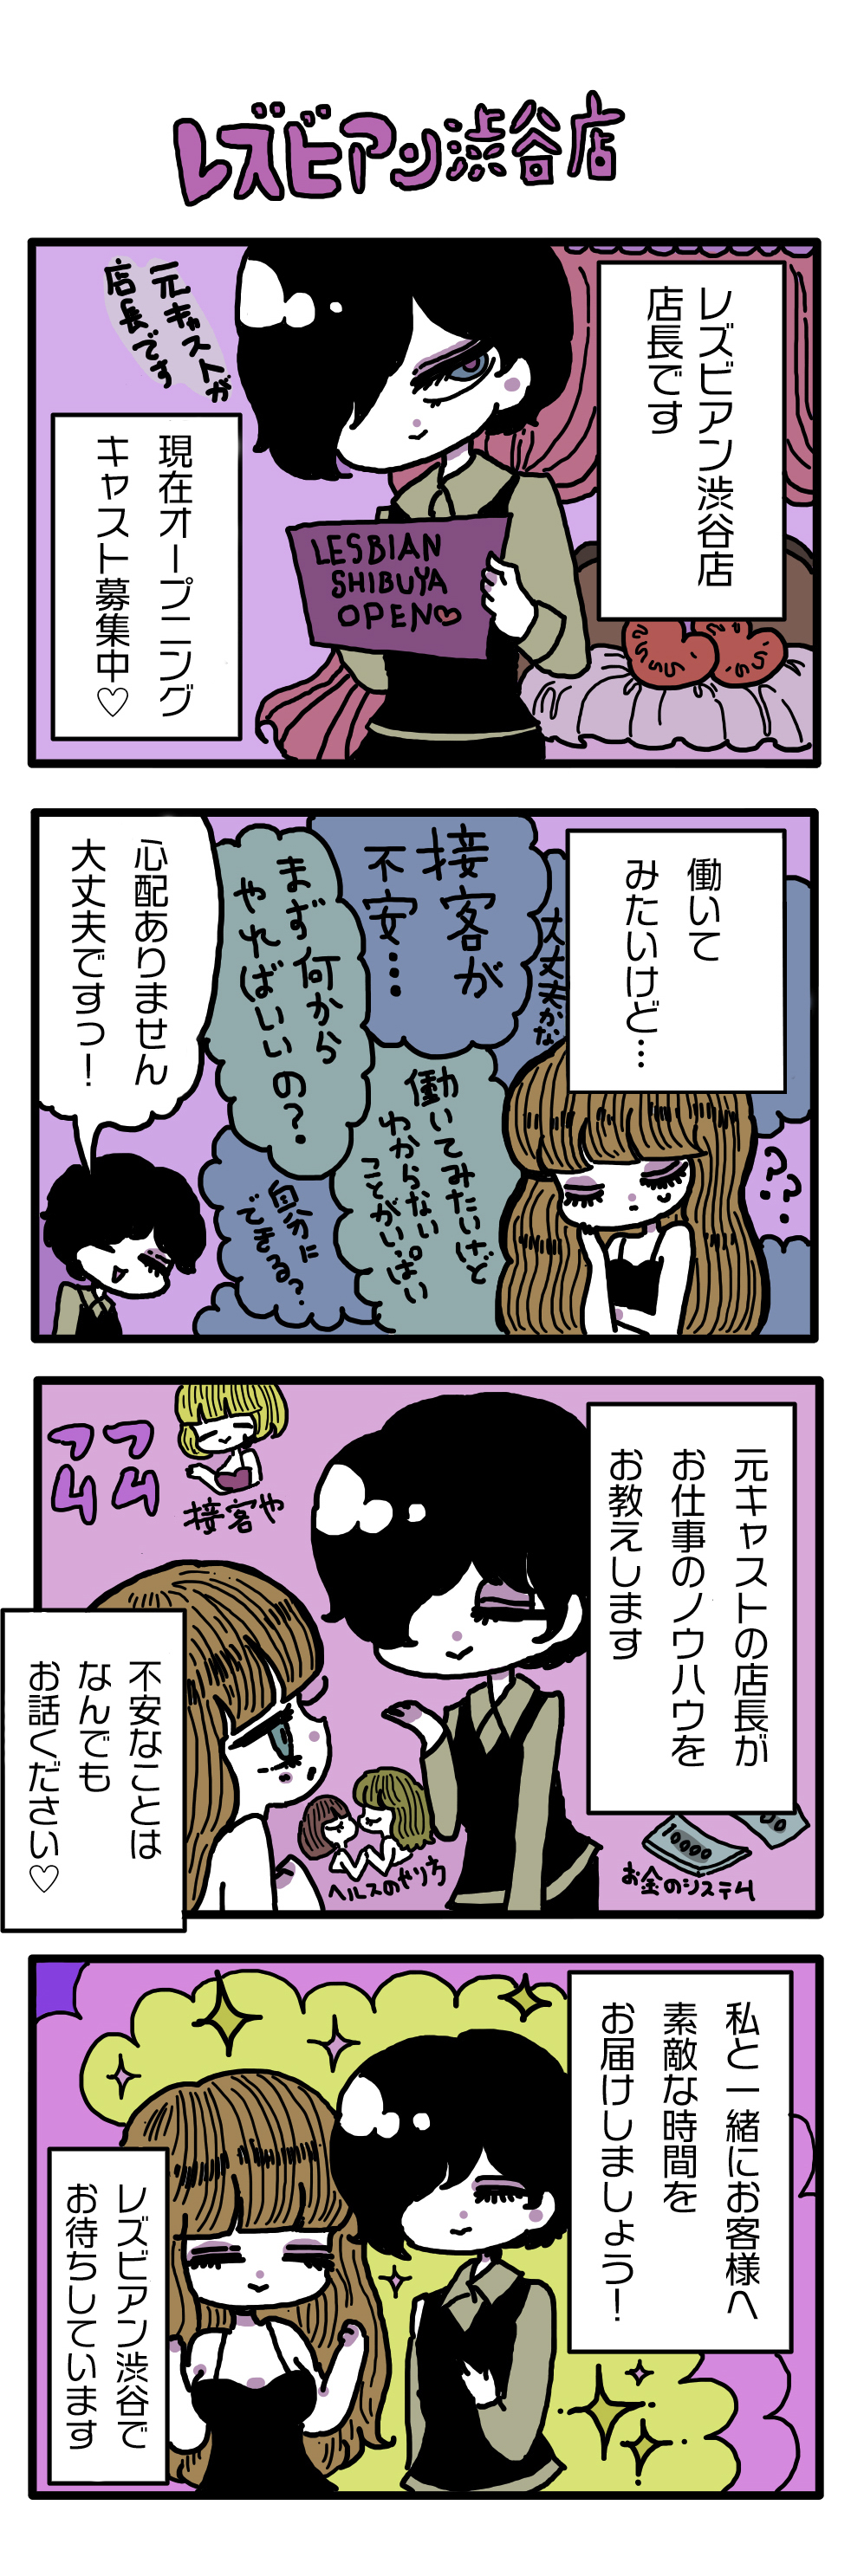 レズビアン東京 漫画3